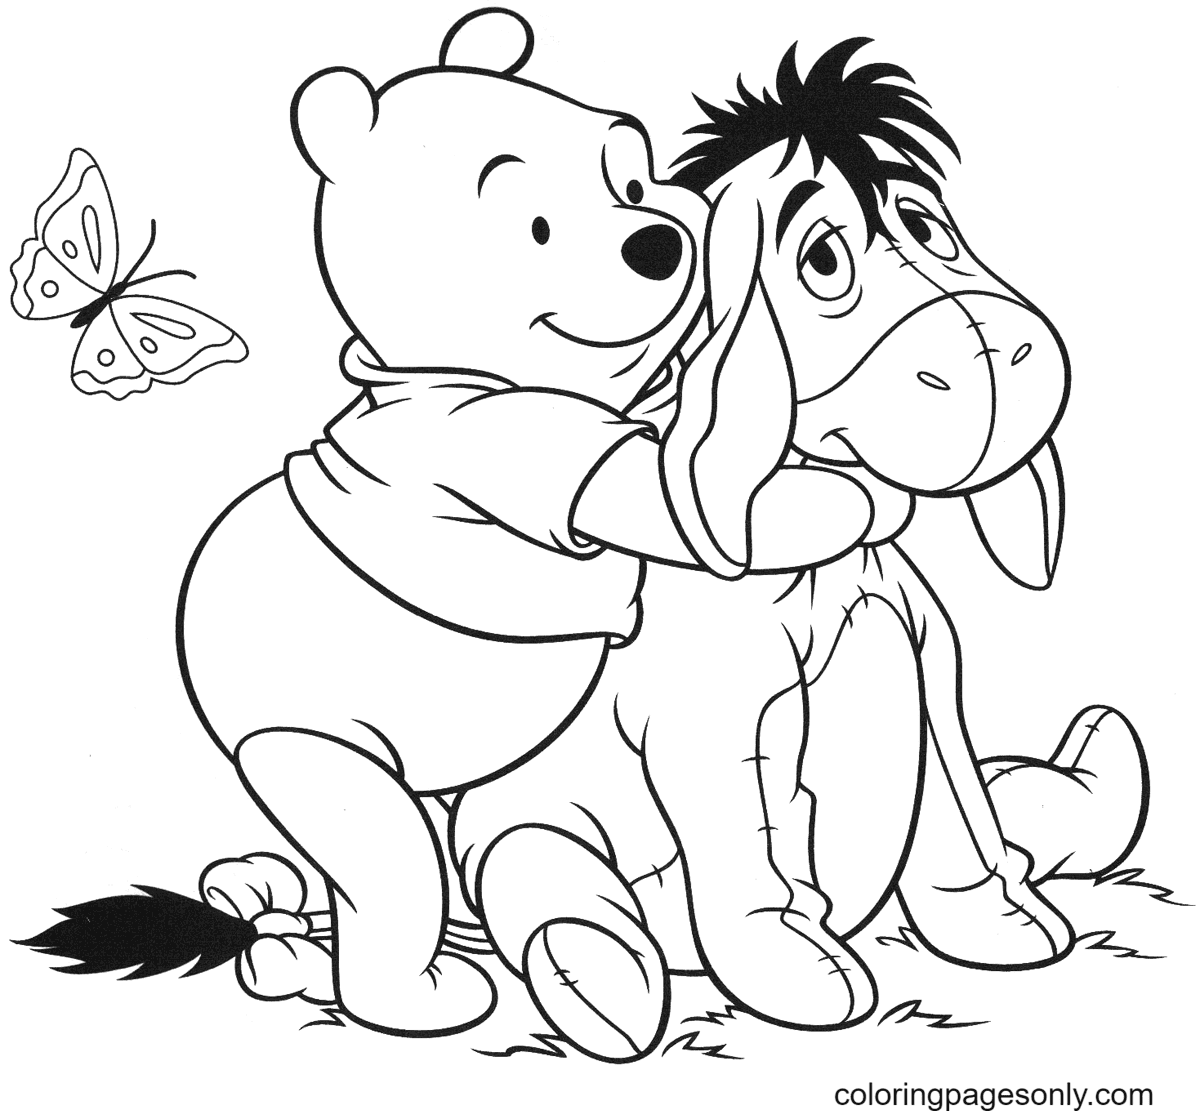 Pooh Hugs Eeyore Coloring Page